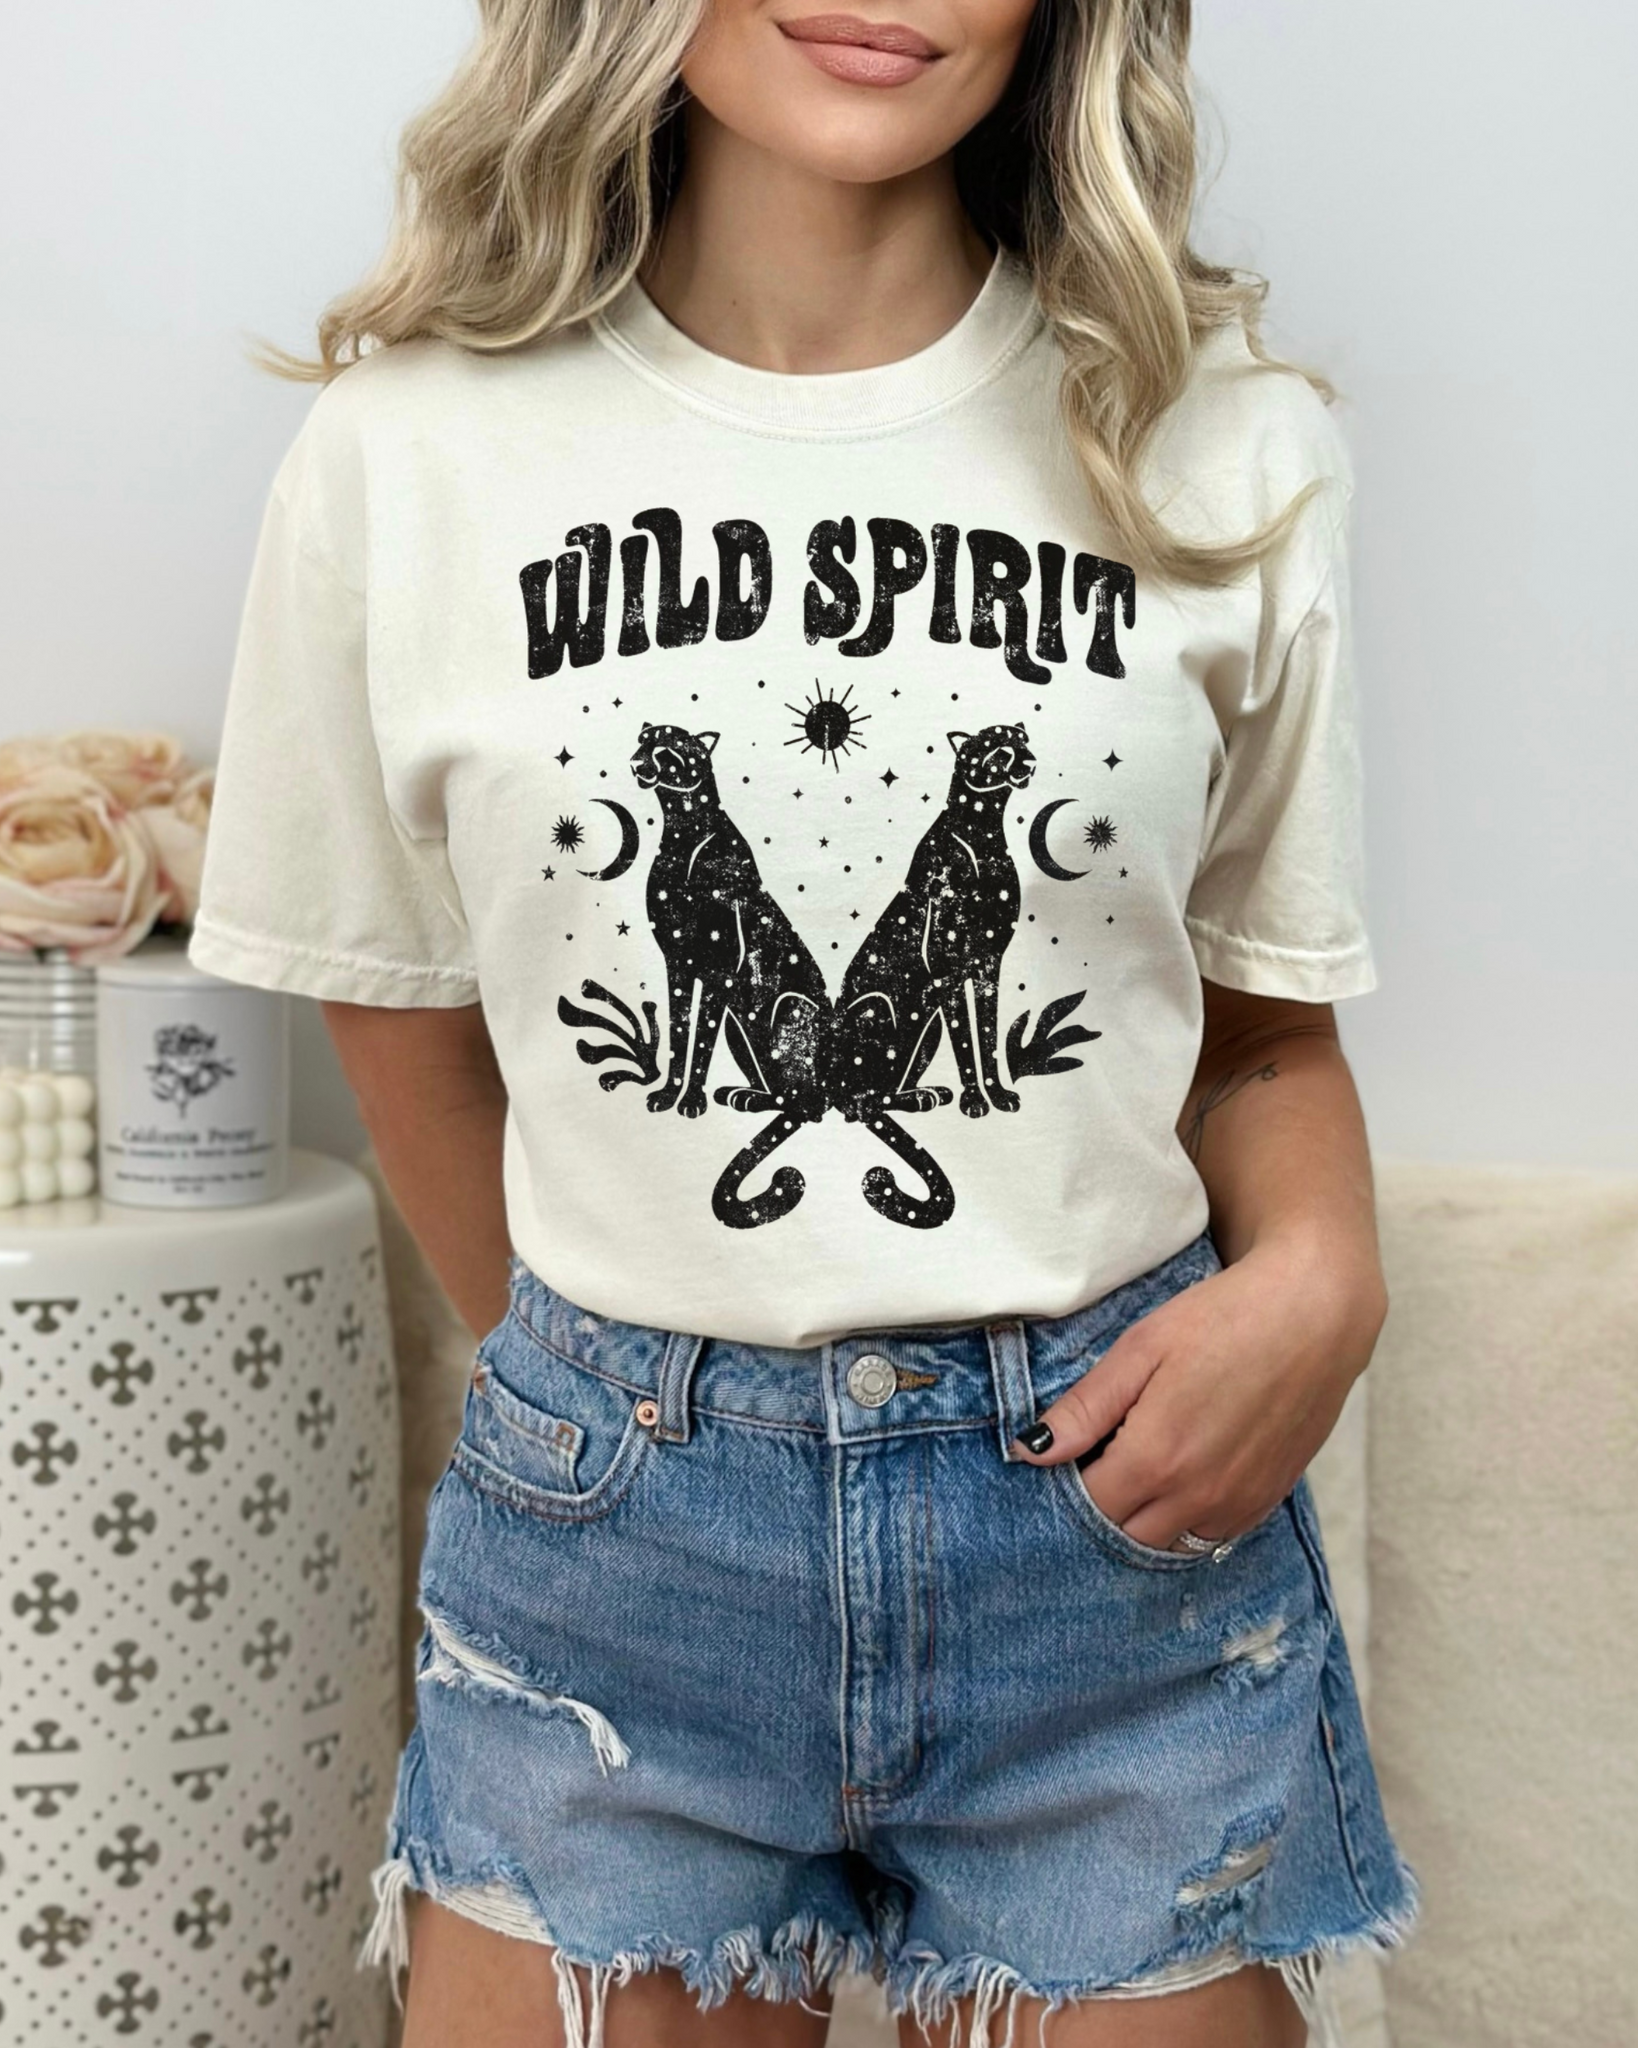 Wild Spirit - Graphic Tee